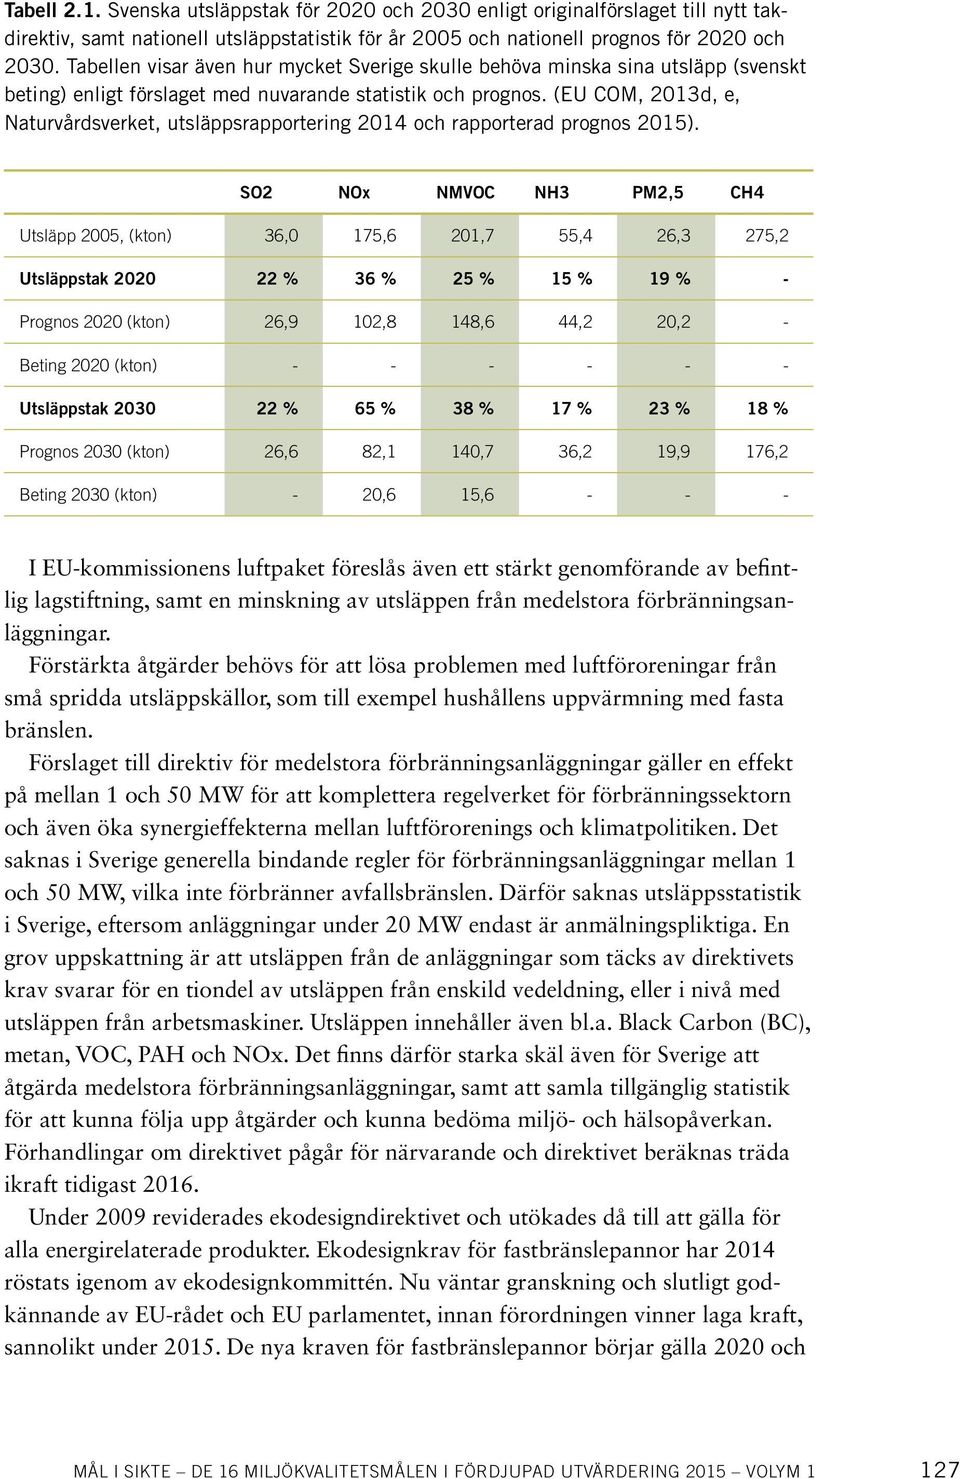 (EU COM, 2013d, e, Naturvårdsverket, utsläppsrapportering 2014 och rapporterad prognos 2015).